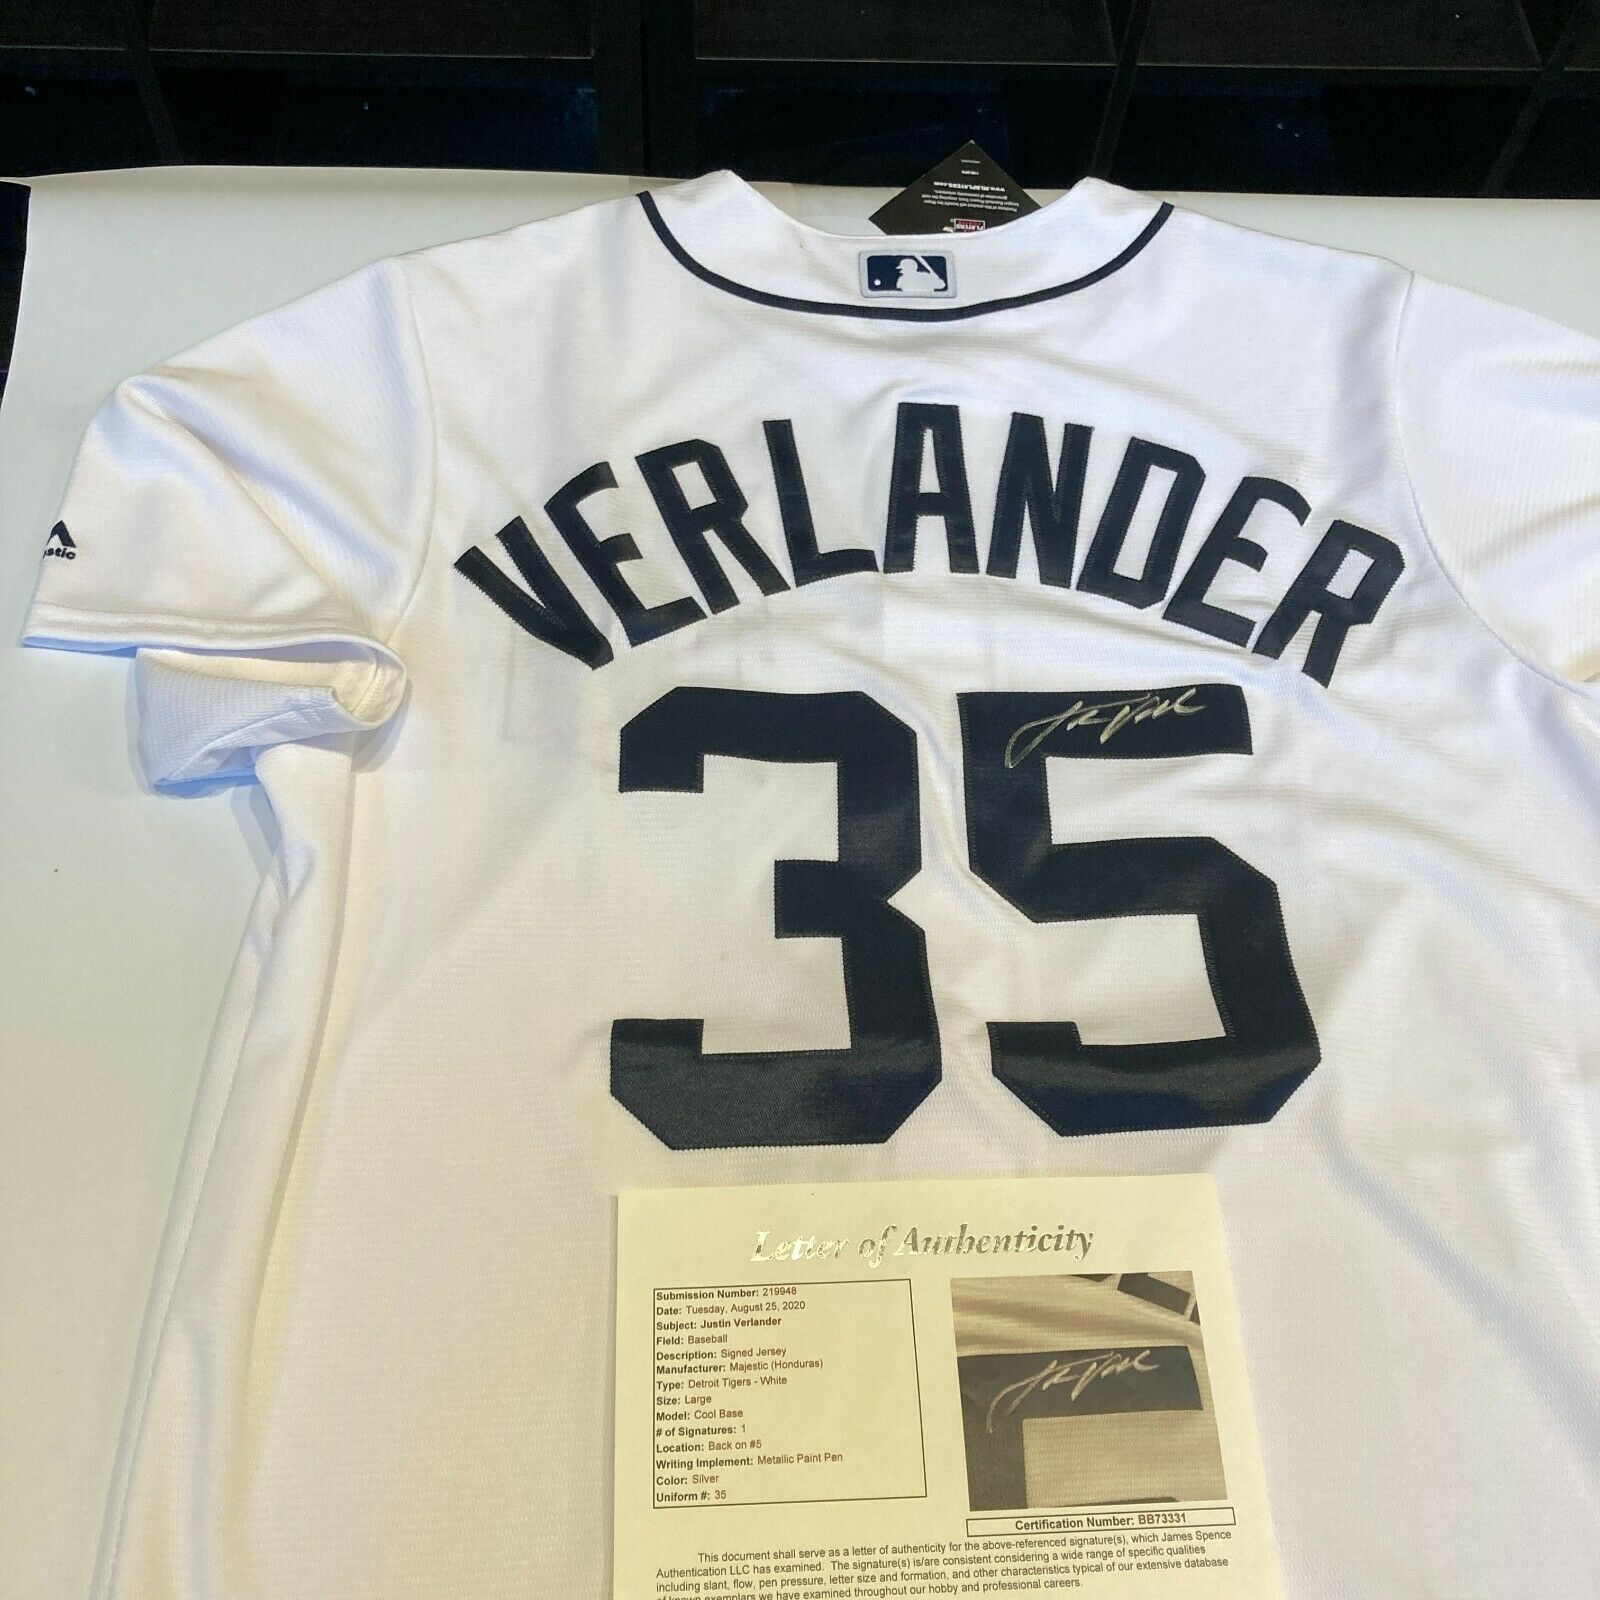 Justin Verlander Detroit Tigers MLB Jersey